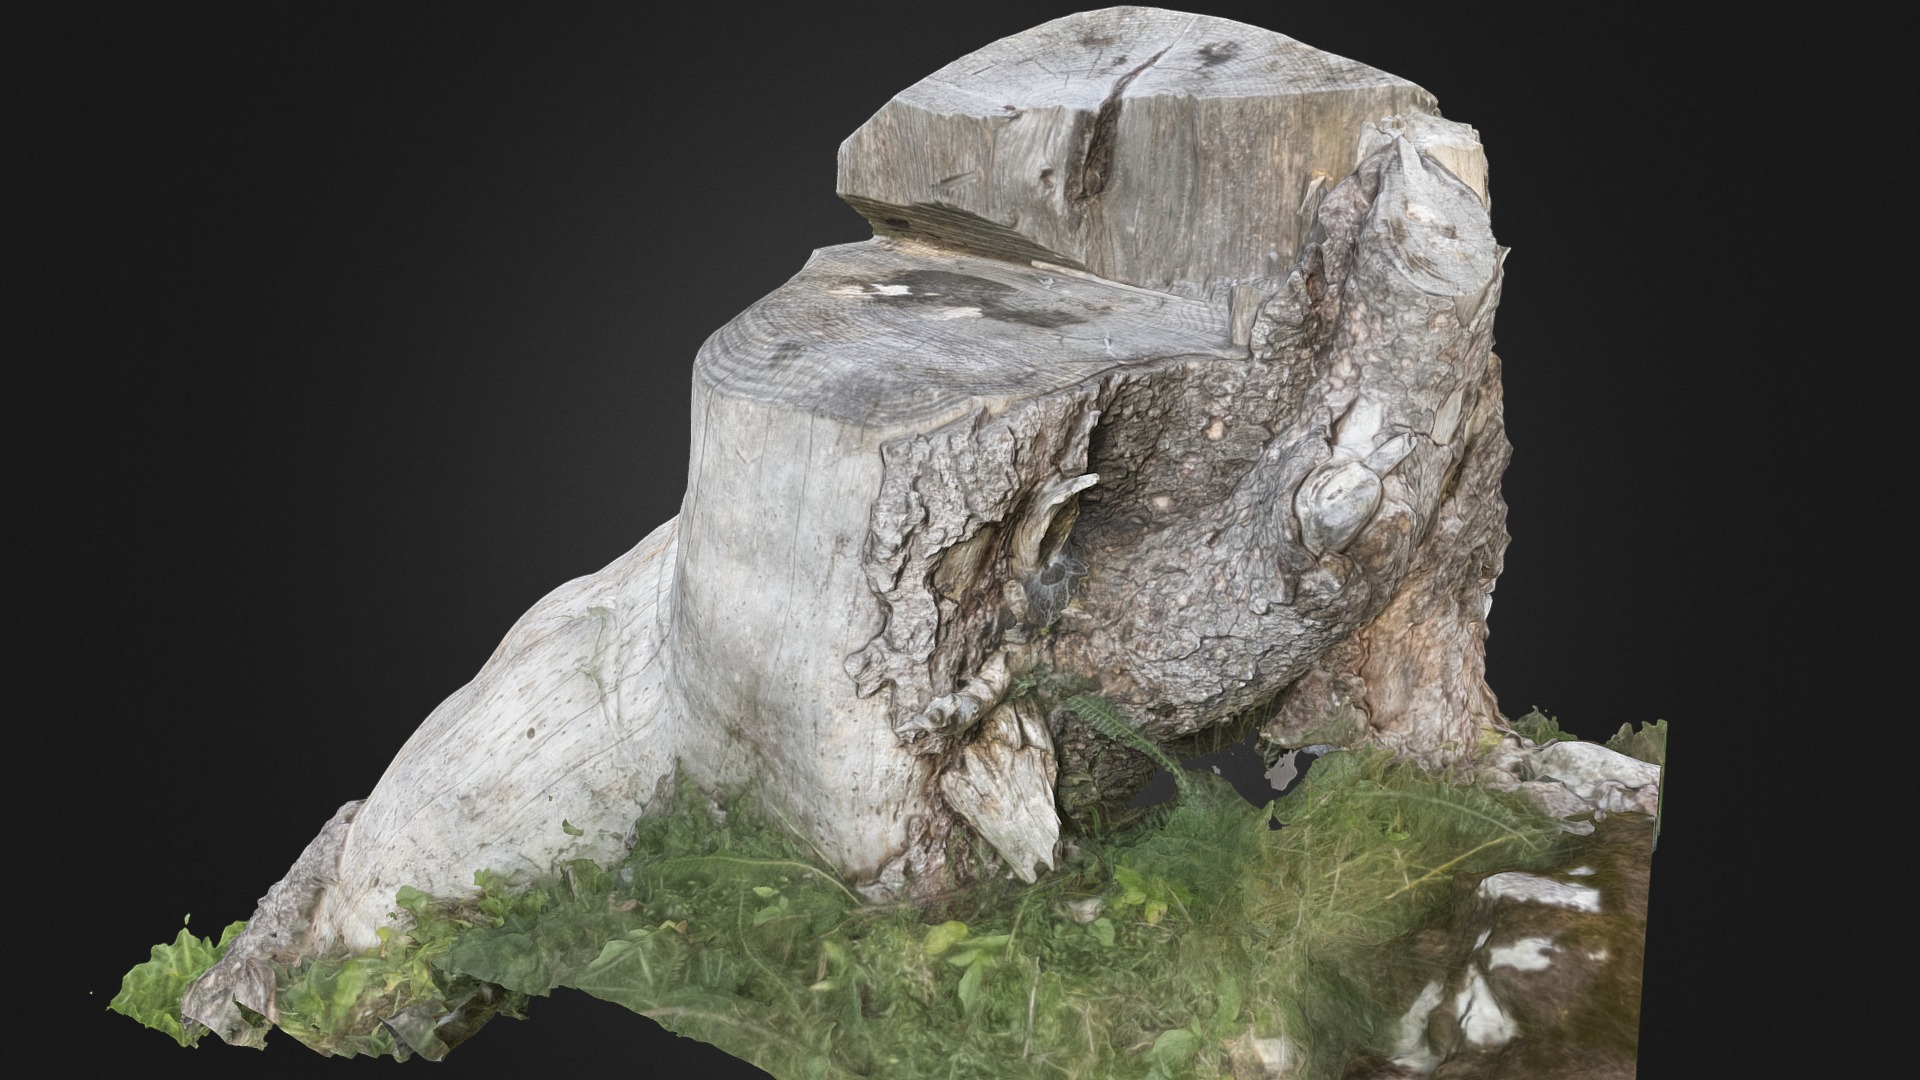 3D model Souche, parc naturel régional Gruyère, Suisse - This is a 3D model of the Souche, parc naturel régional Gruyère, Suisse. The 3D model is about a rock formation with a face carved into it.